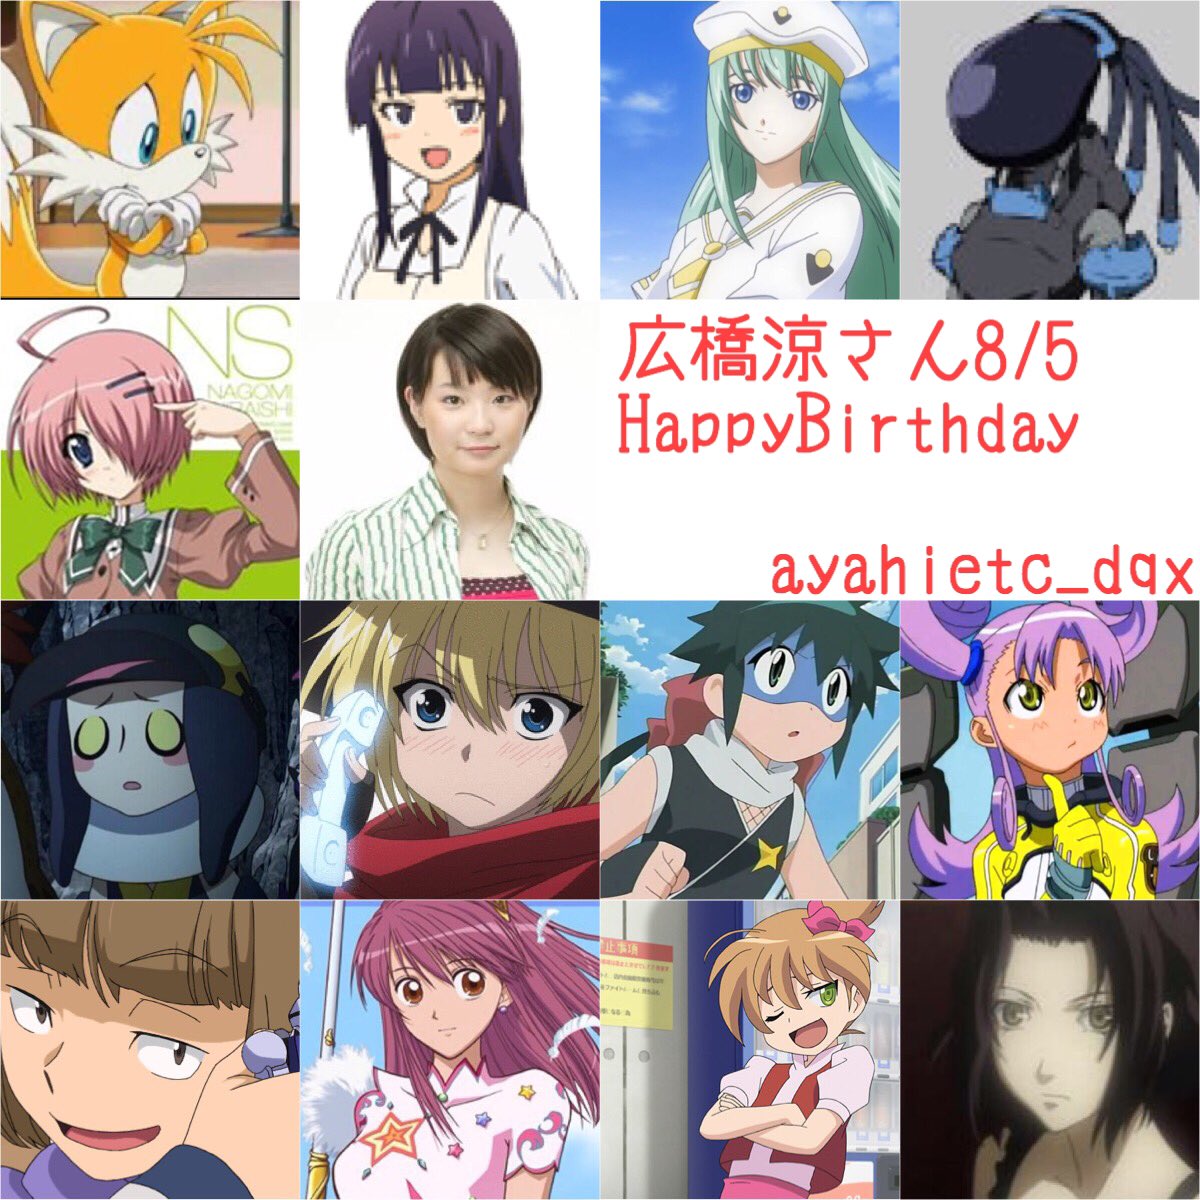 則巻ガジラ Pa Twitter 8 5は 声優の広橋涼さんの誕生日です おめでとうございます 広橋涼誕生祭